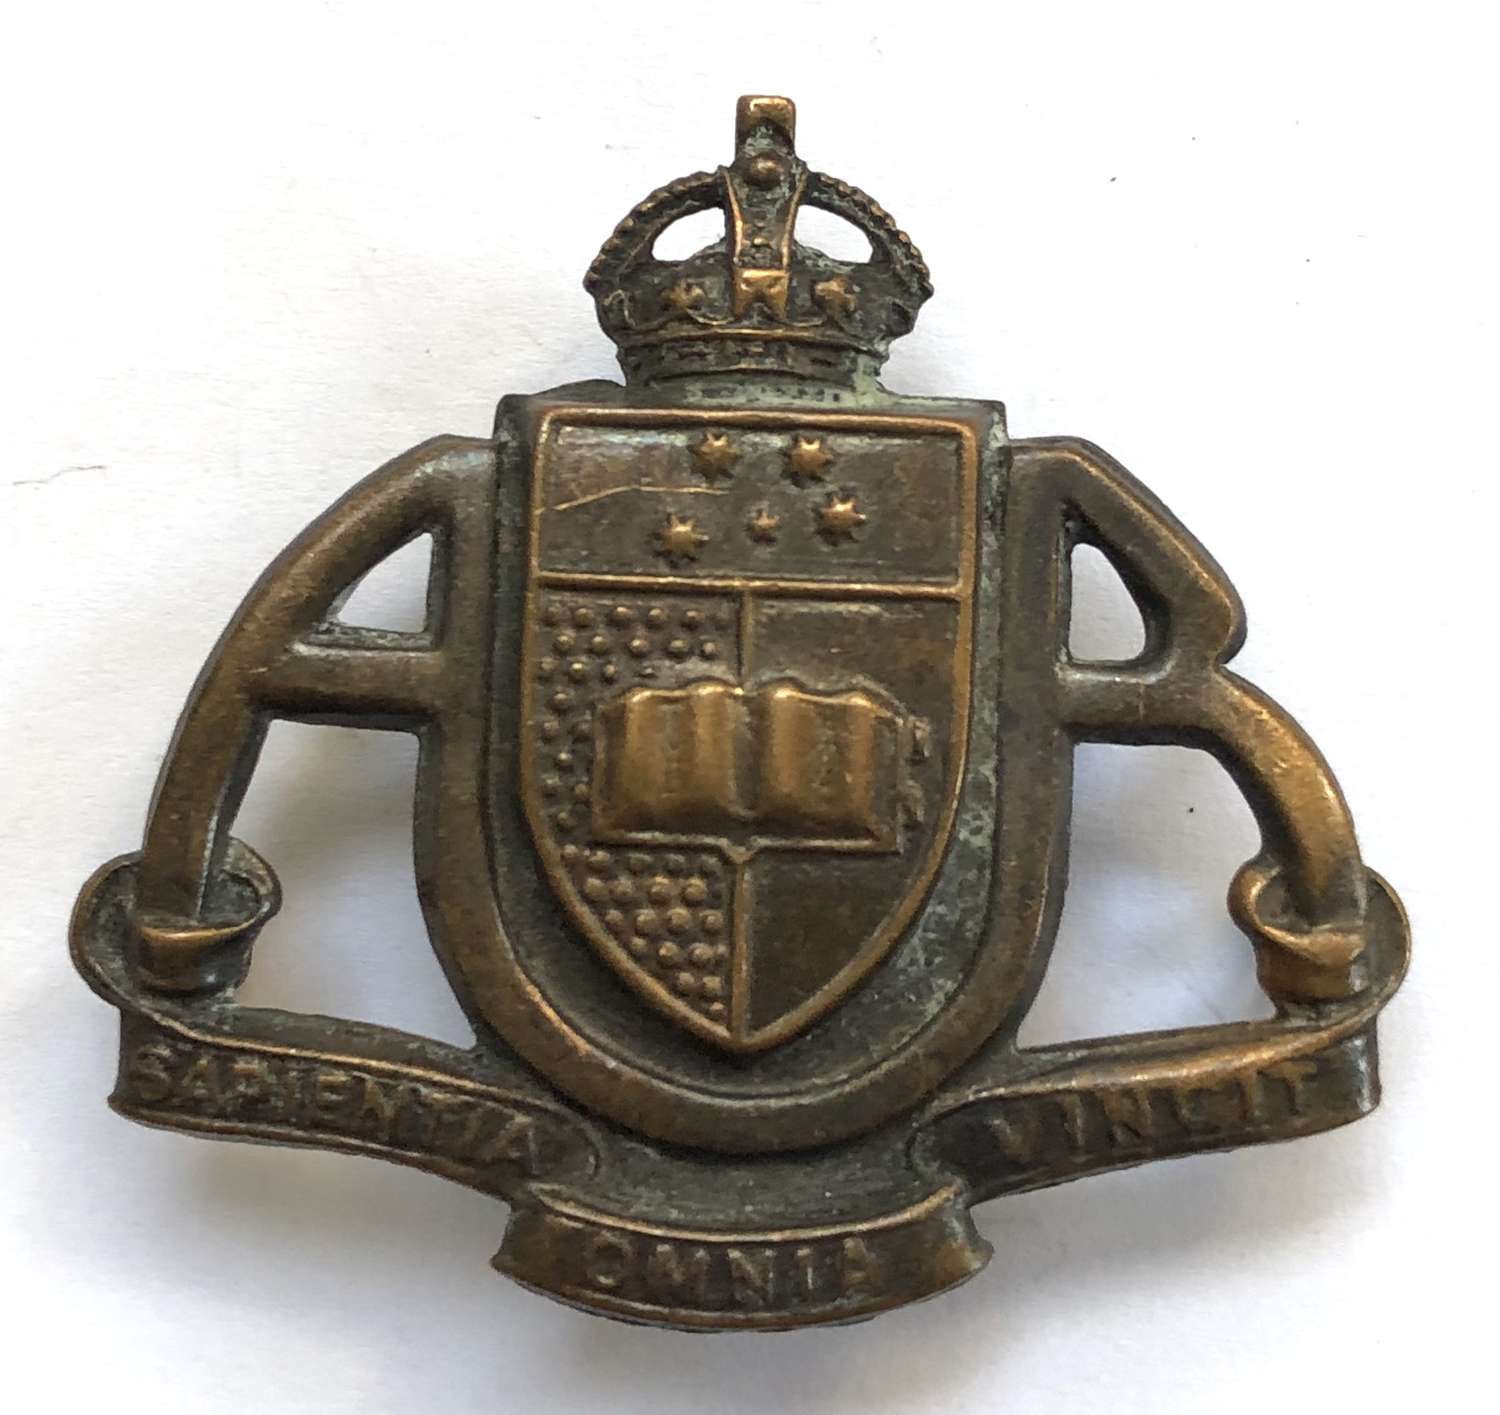 Australian. Adelaide University Regiment slouch hat badge c1948-52